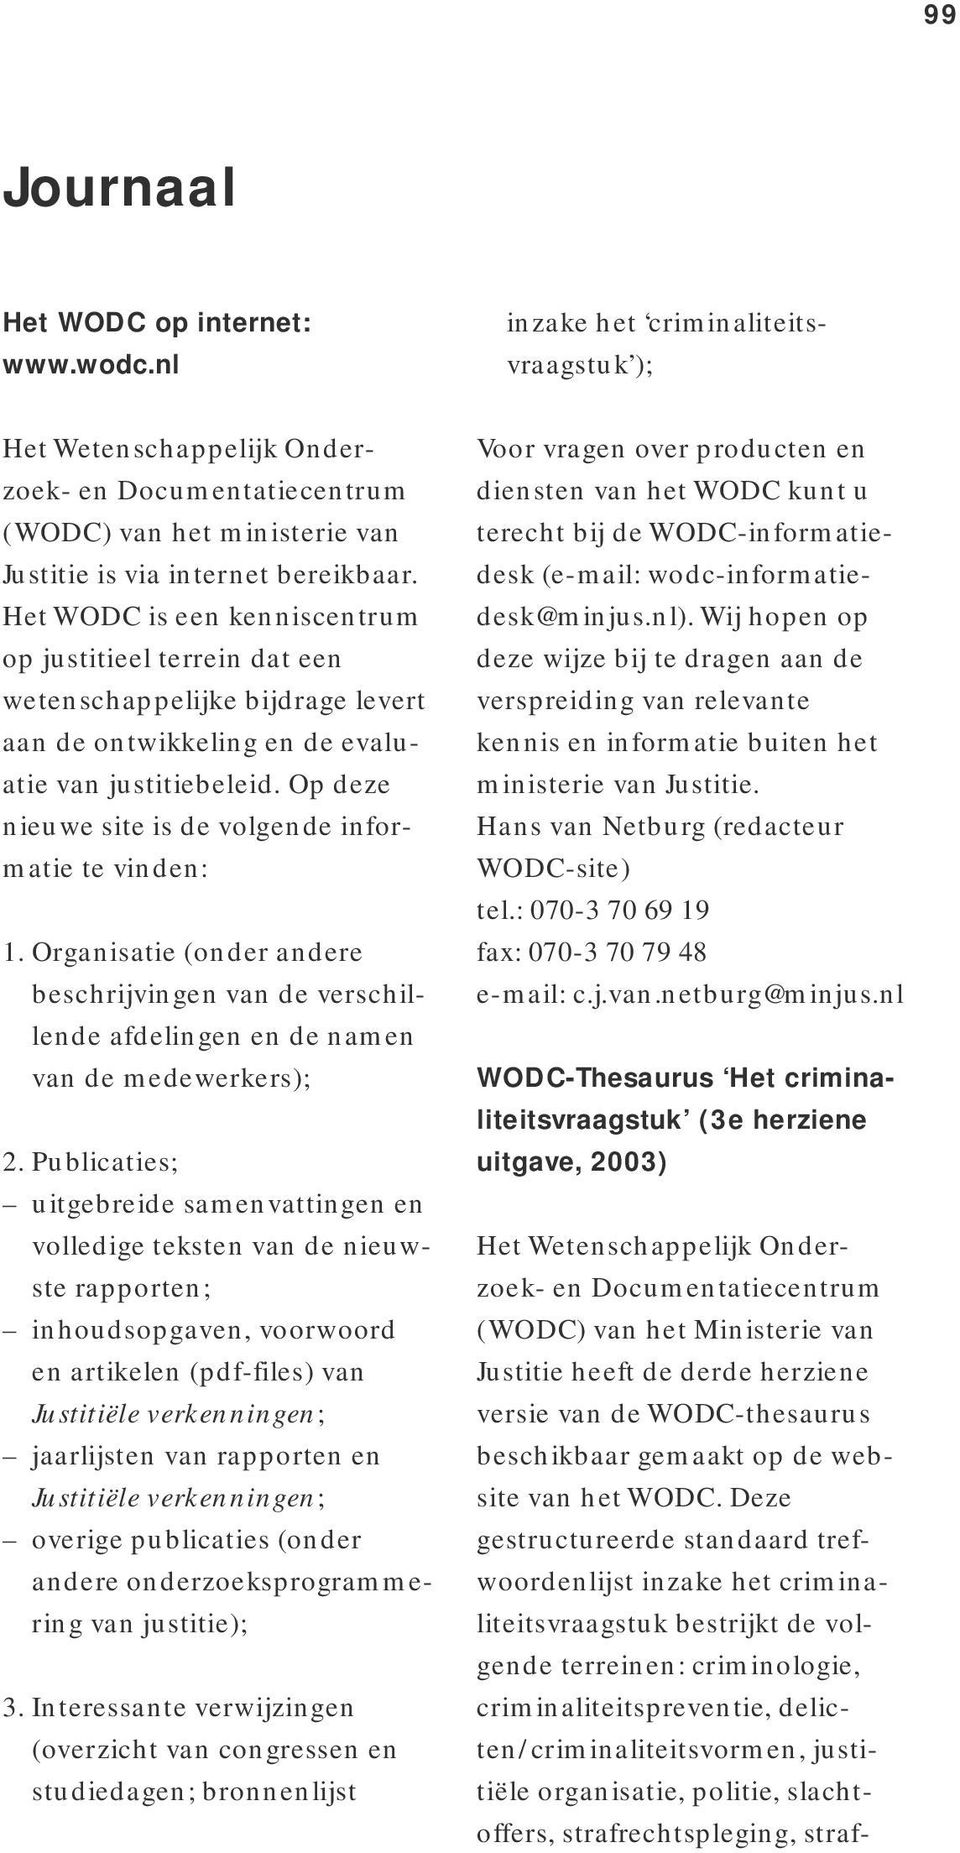 Het WODC is een kenniscentrum op justitieel terrein dat een wetenschappelijke bijdrage levert aan de ontwikkeling en de evaluatie van justitiebeleid.